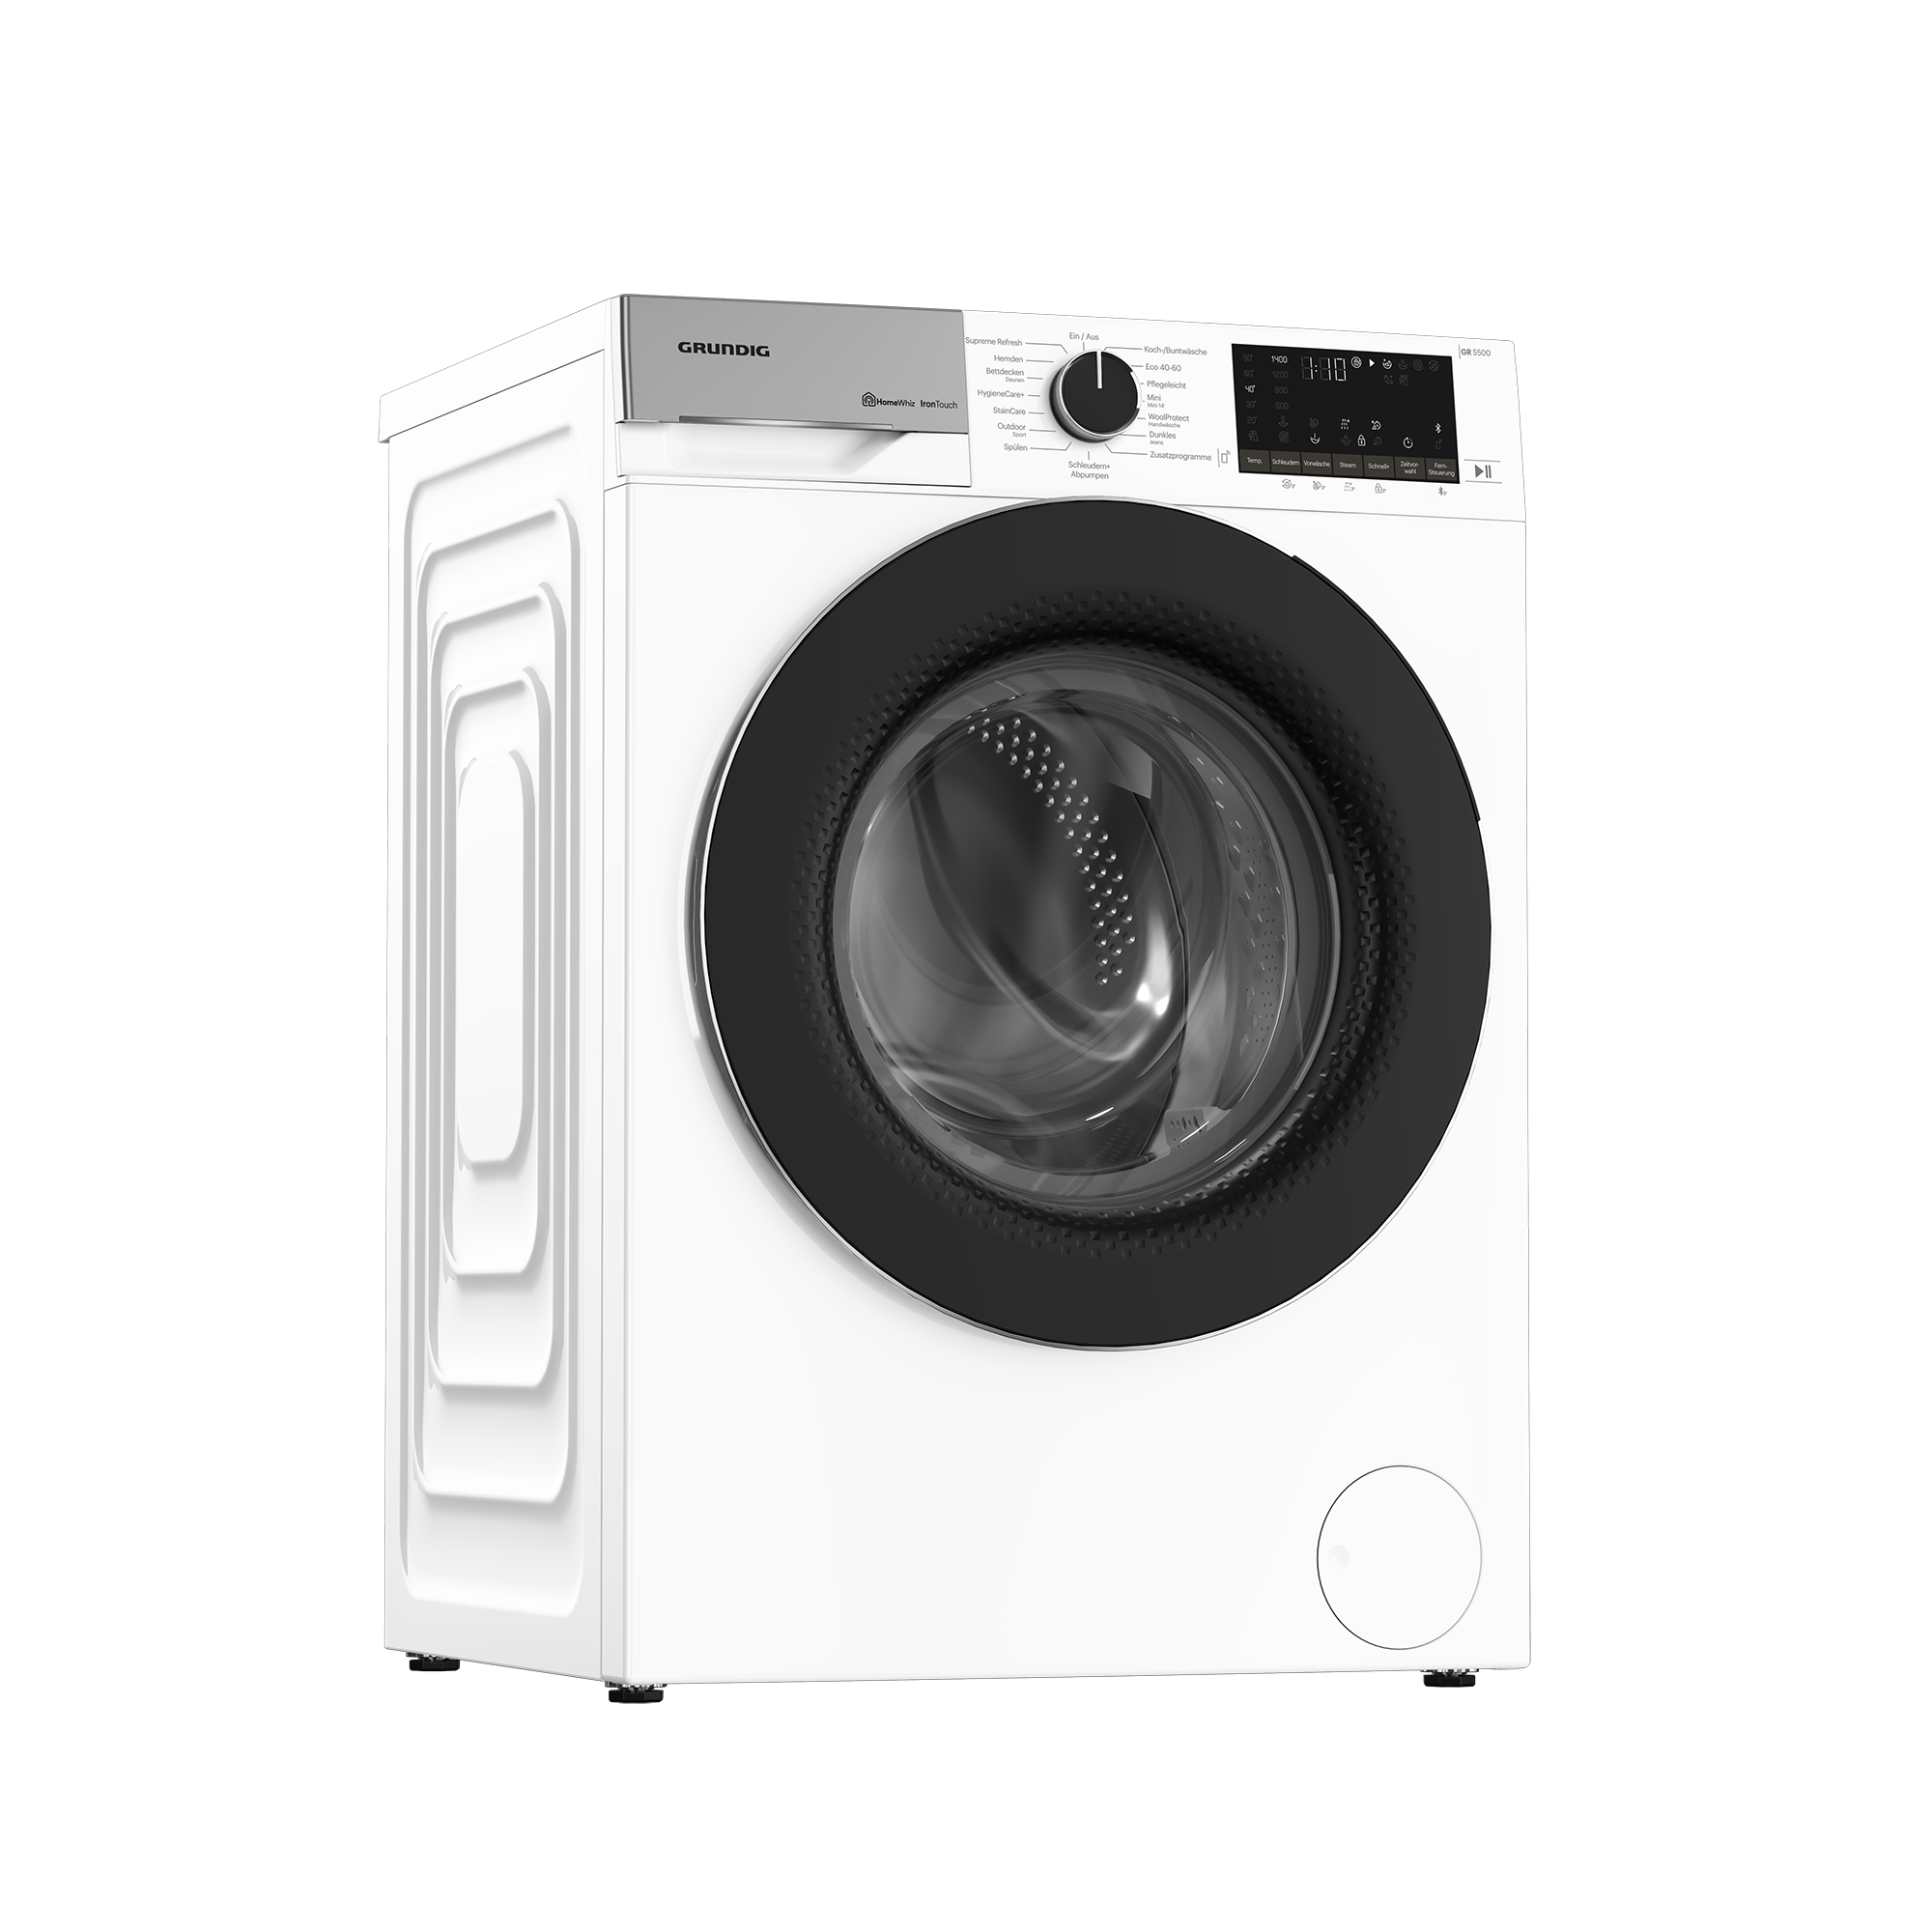 Grundig Waschmaschine Trocknen | GW5P59415W2 | - - & Waschen jetzt kaufen